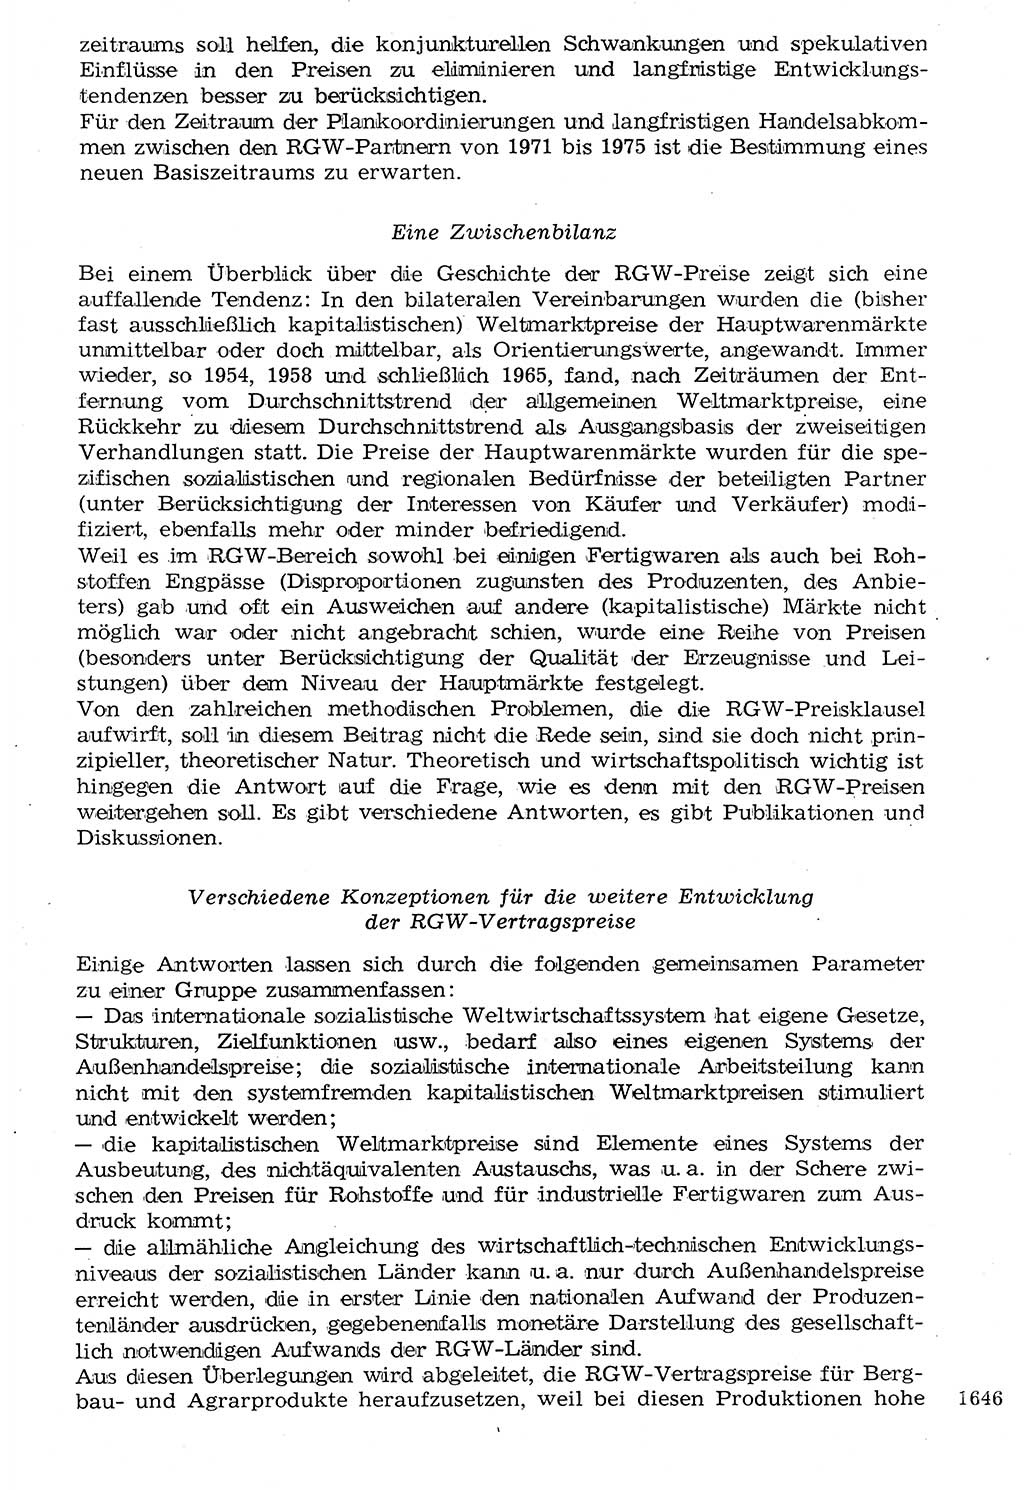 Staat und Recht (StuR), 17. Jahrgang [Deutsche Demokratische Republik (DDR)] 1968, Seite 1646 (StuR DDR 1968, S. 1646)